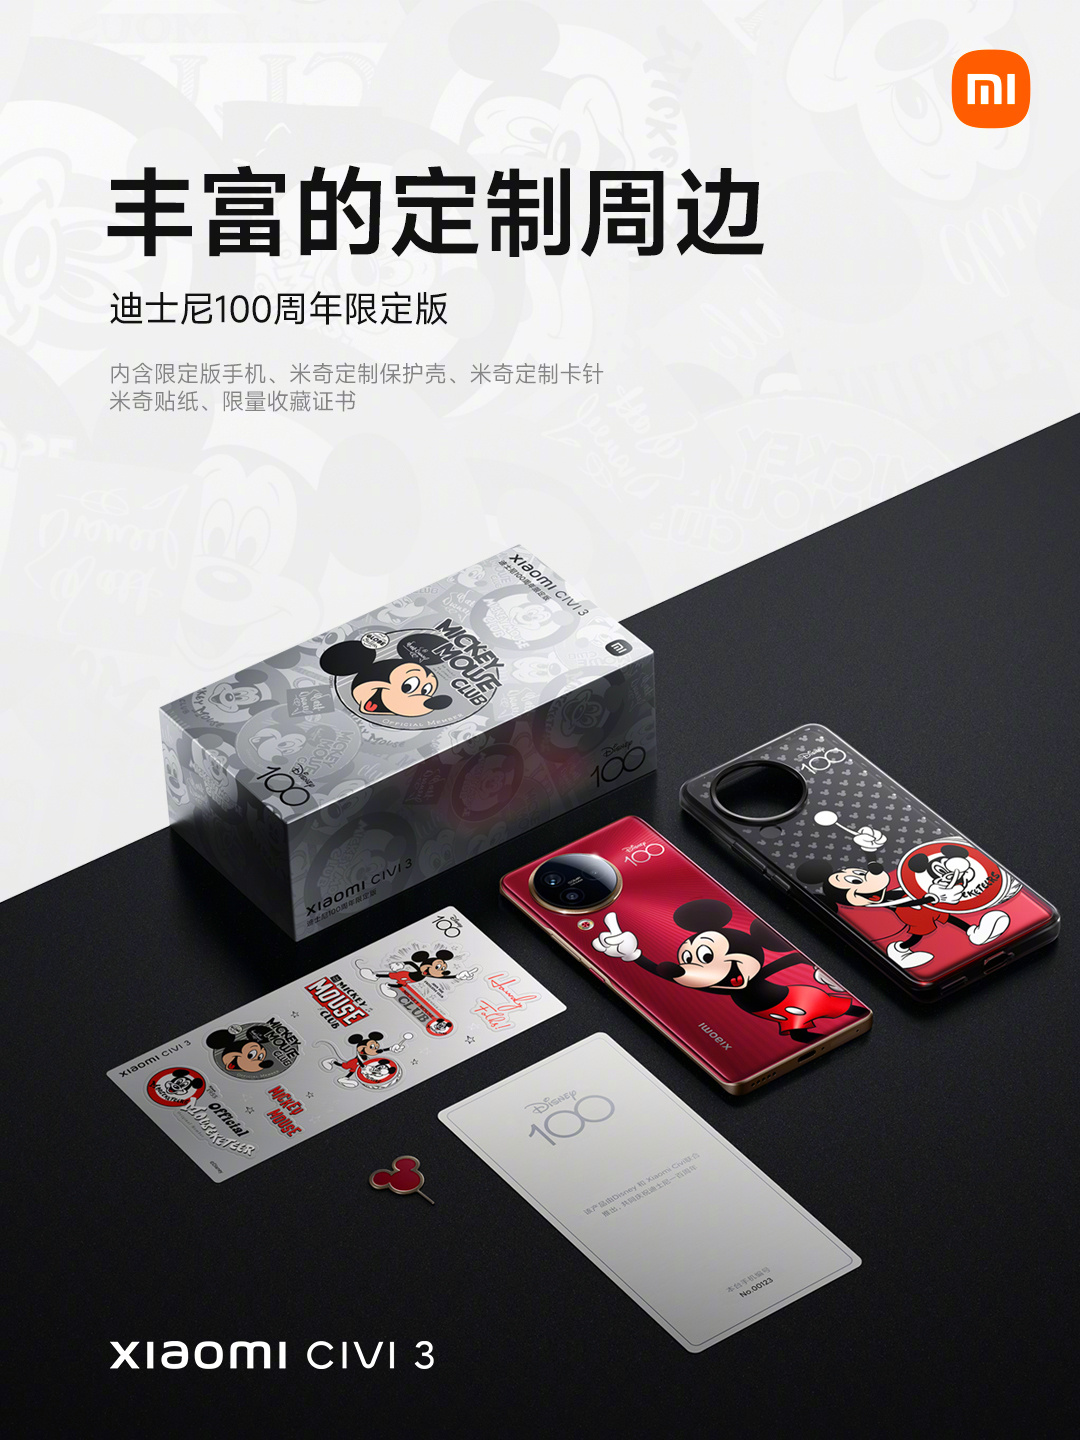 Phụ kiện bên trong Xiaomi Civi 3 Disney 100th Anniversary Limited Edition